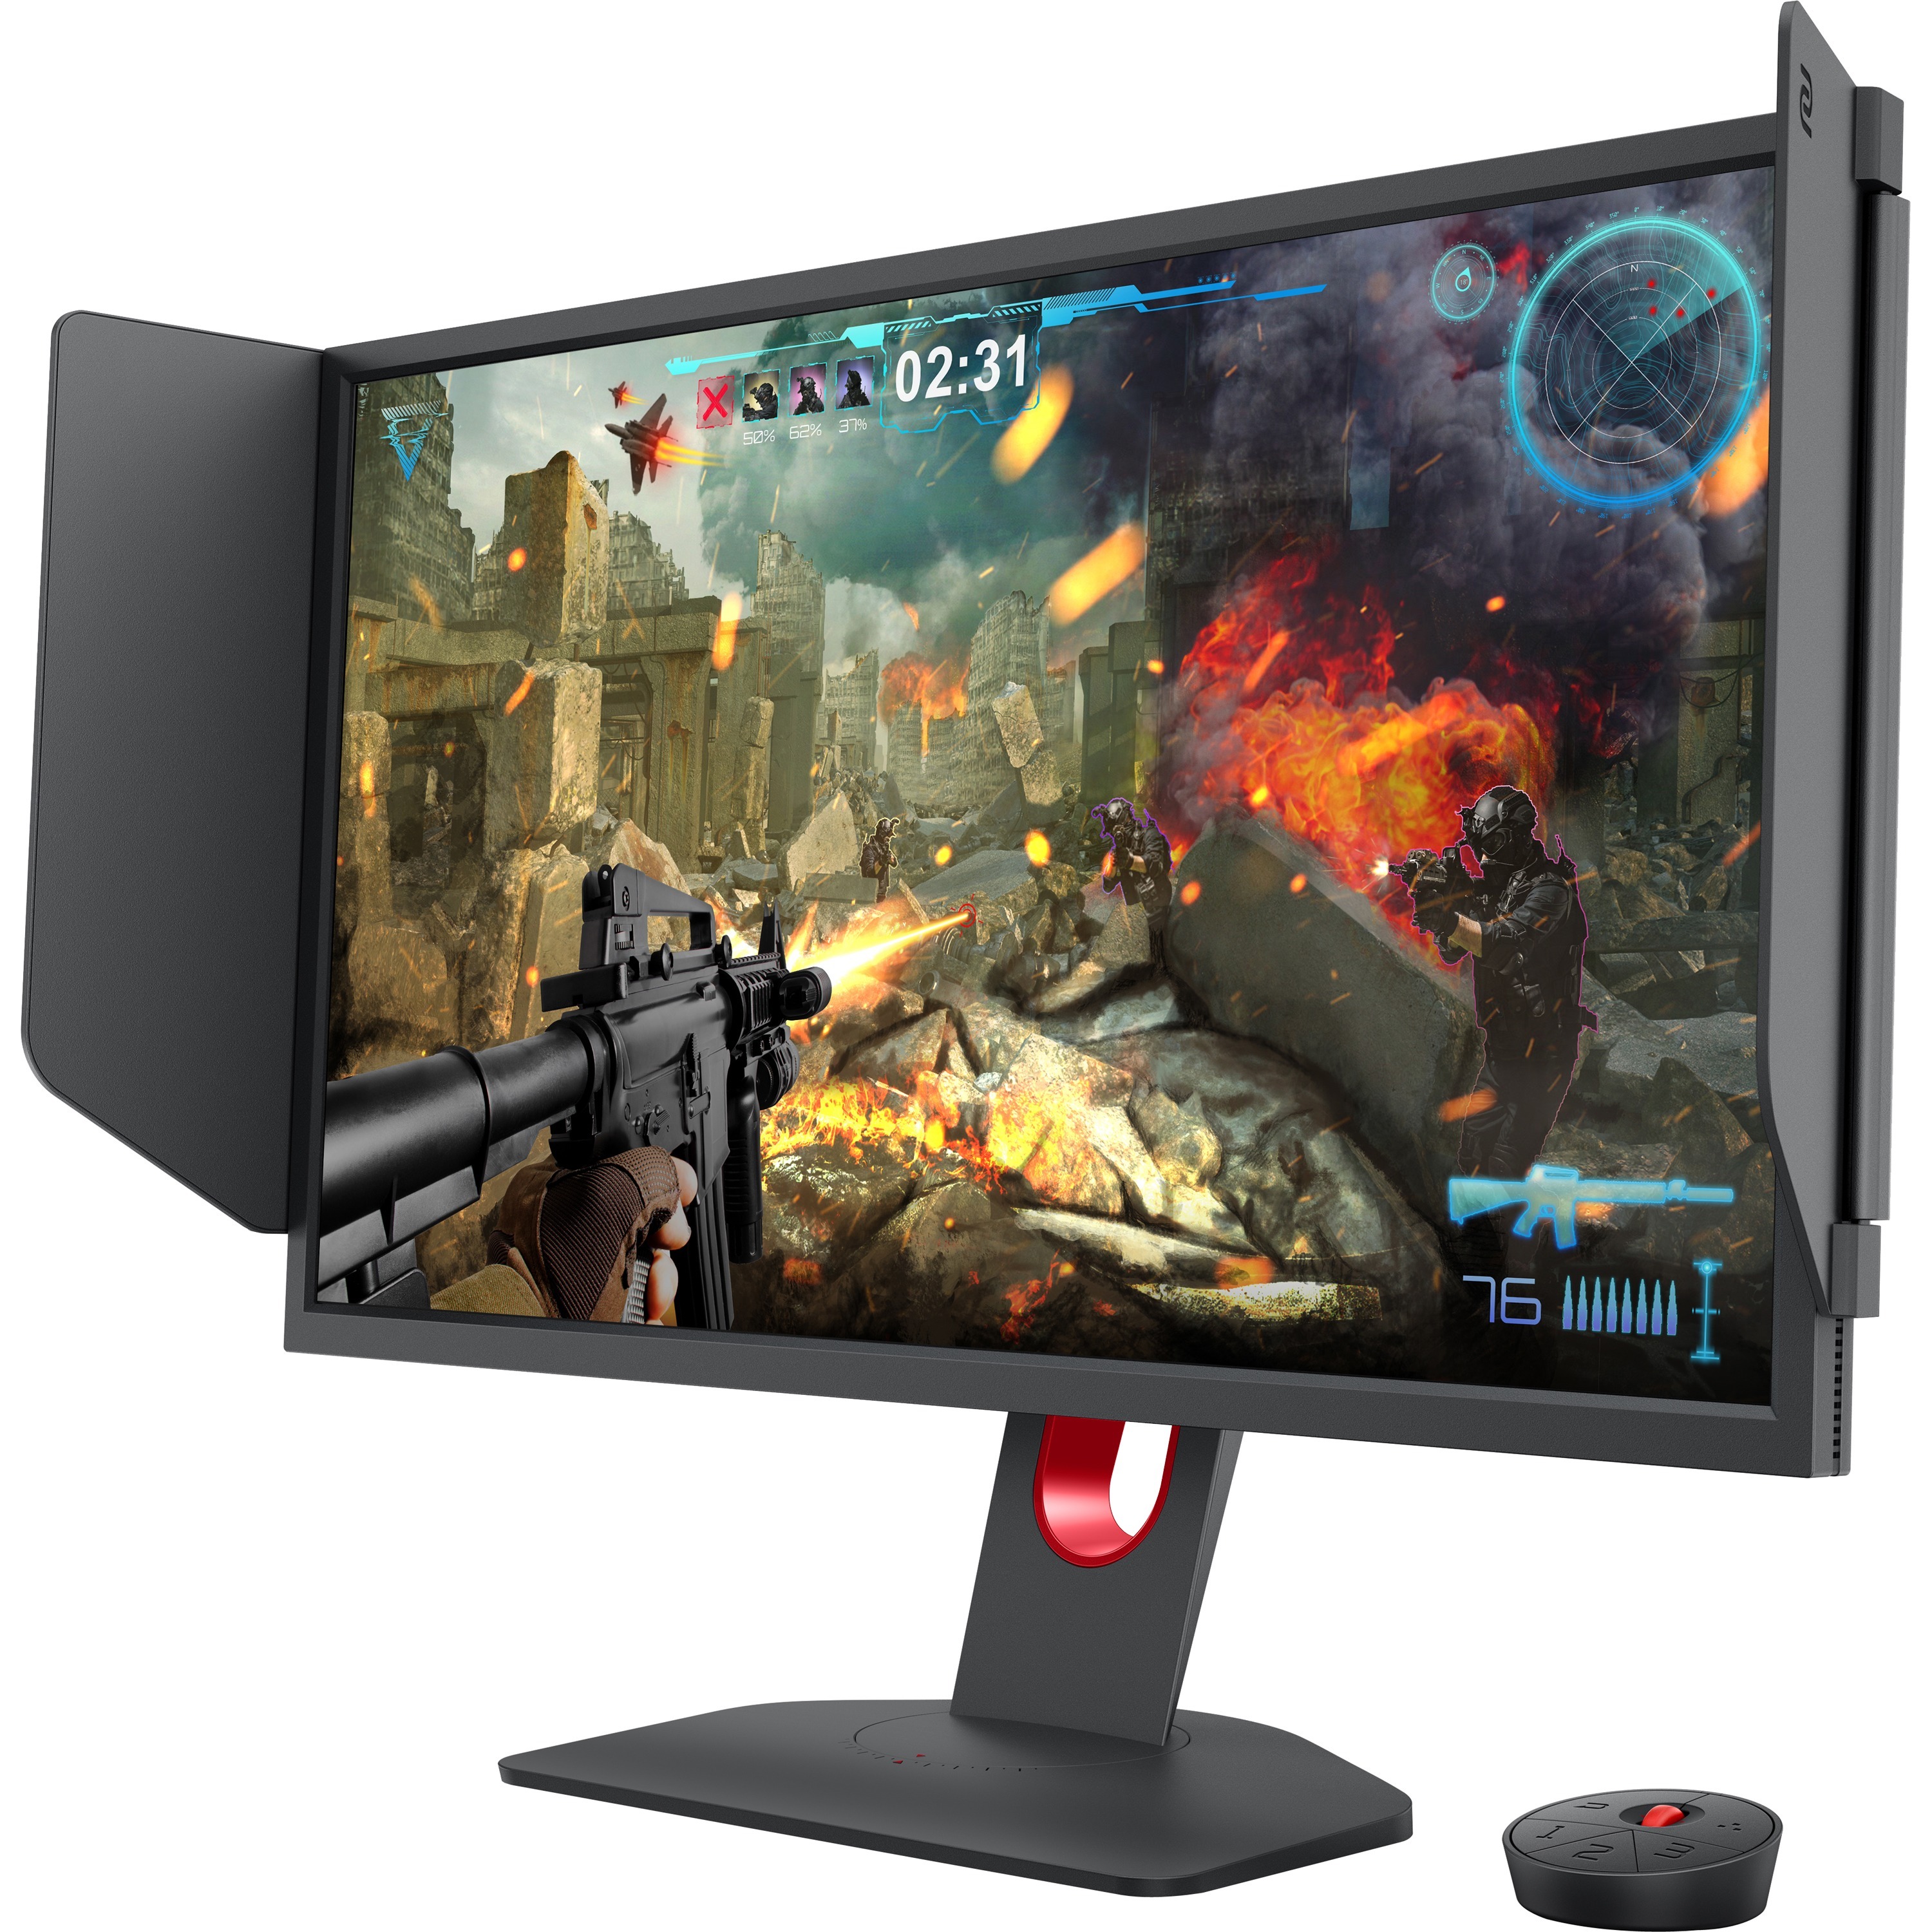 XL2546X 240Hz DyAc™2 24.5 inch Gaming Monitor